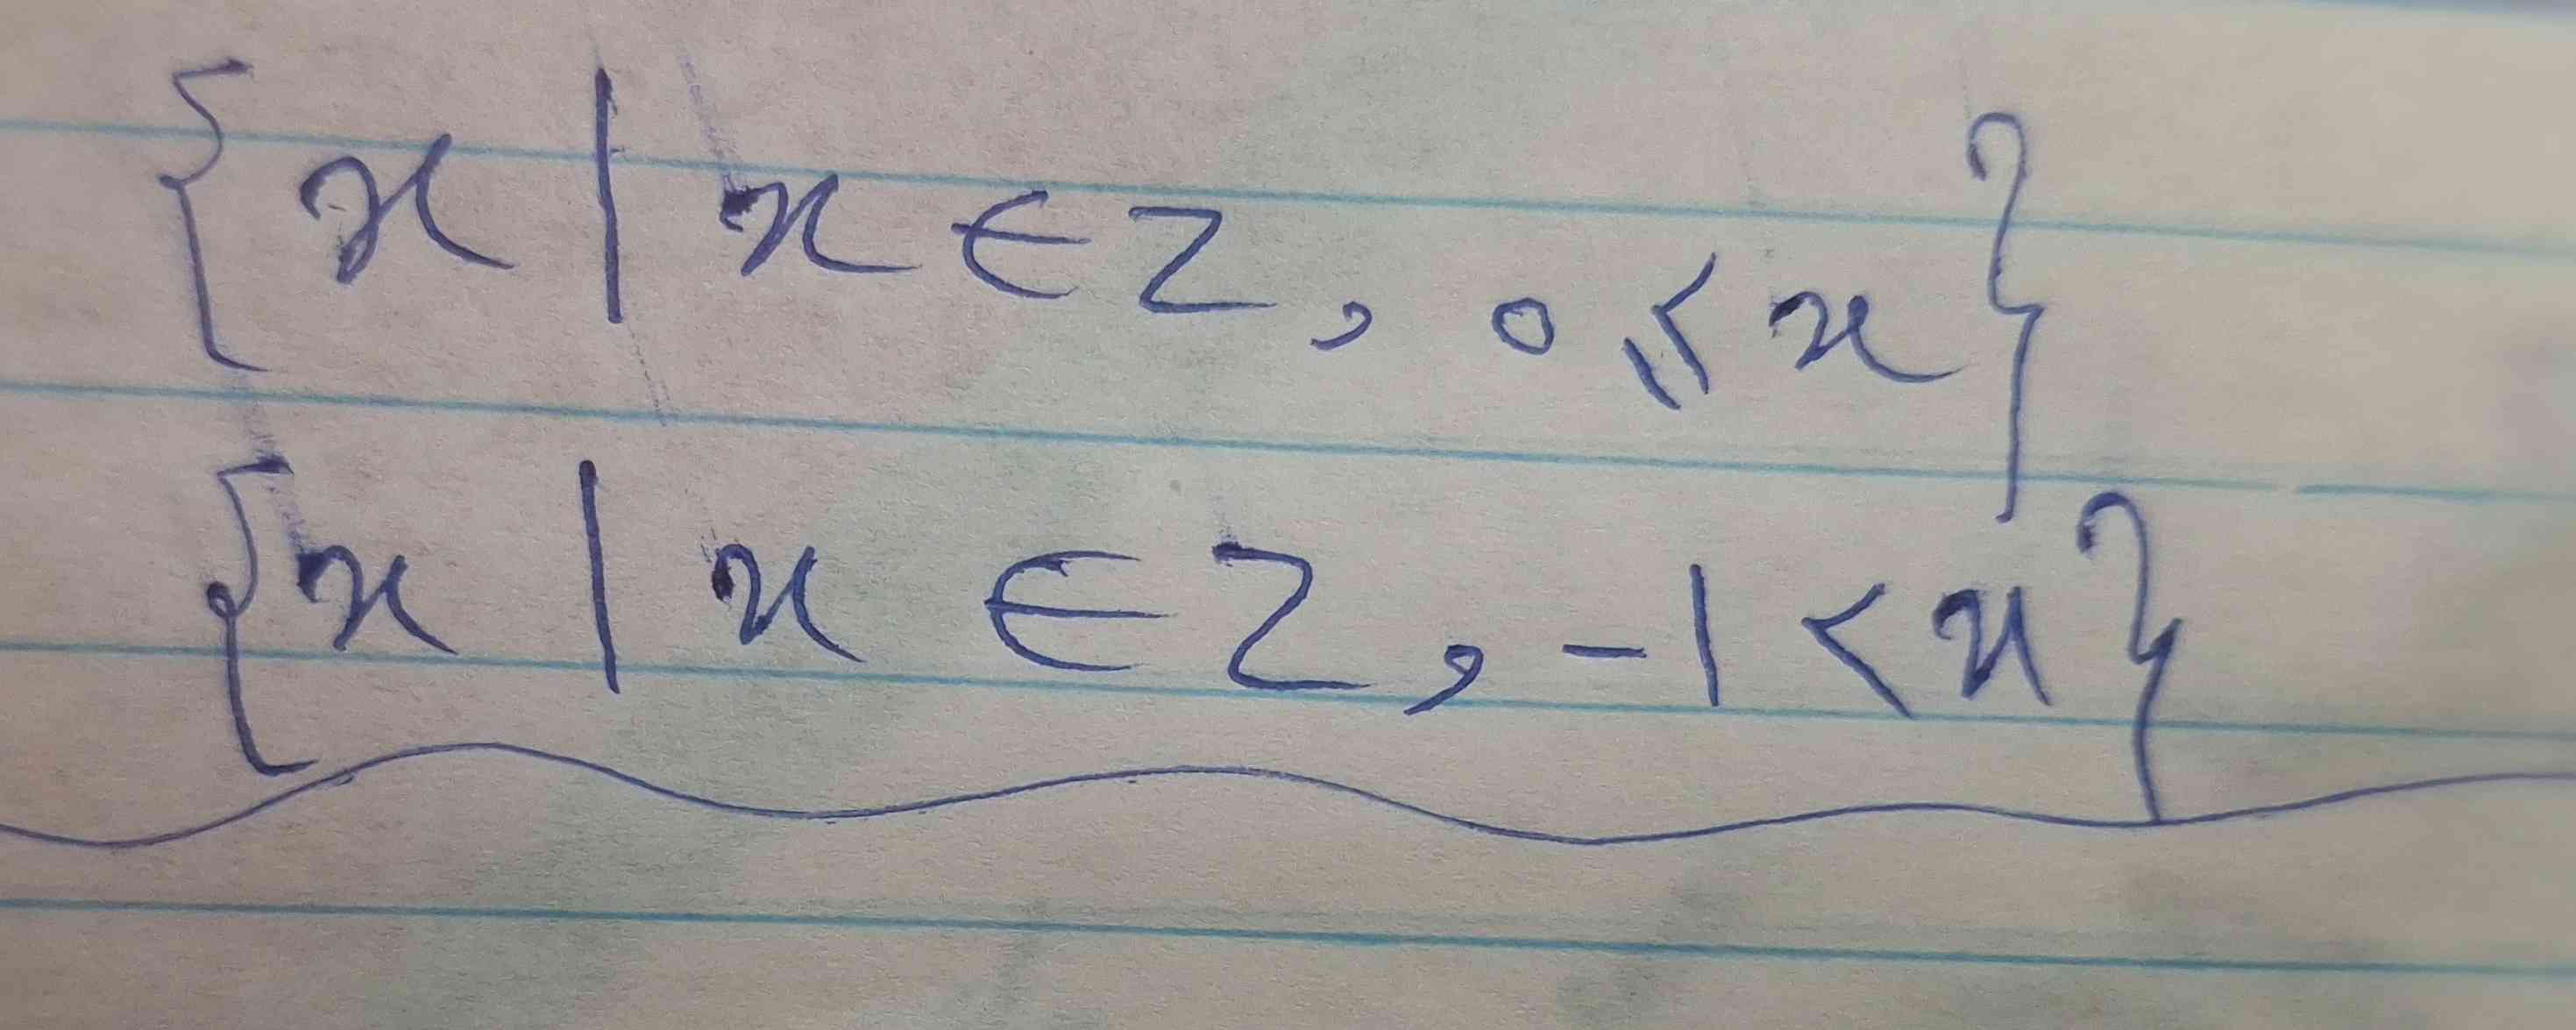 مجموعه اعداد حسابی رو به زبان ریاضی میشه اینجوری نوشت؟